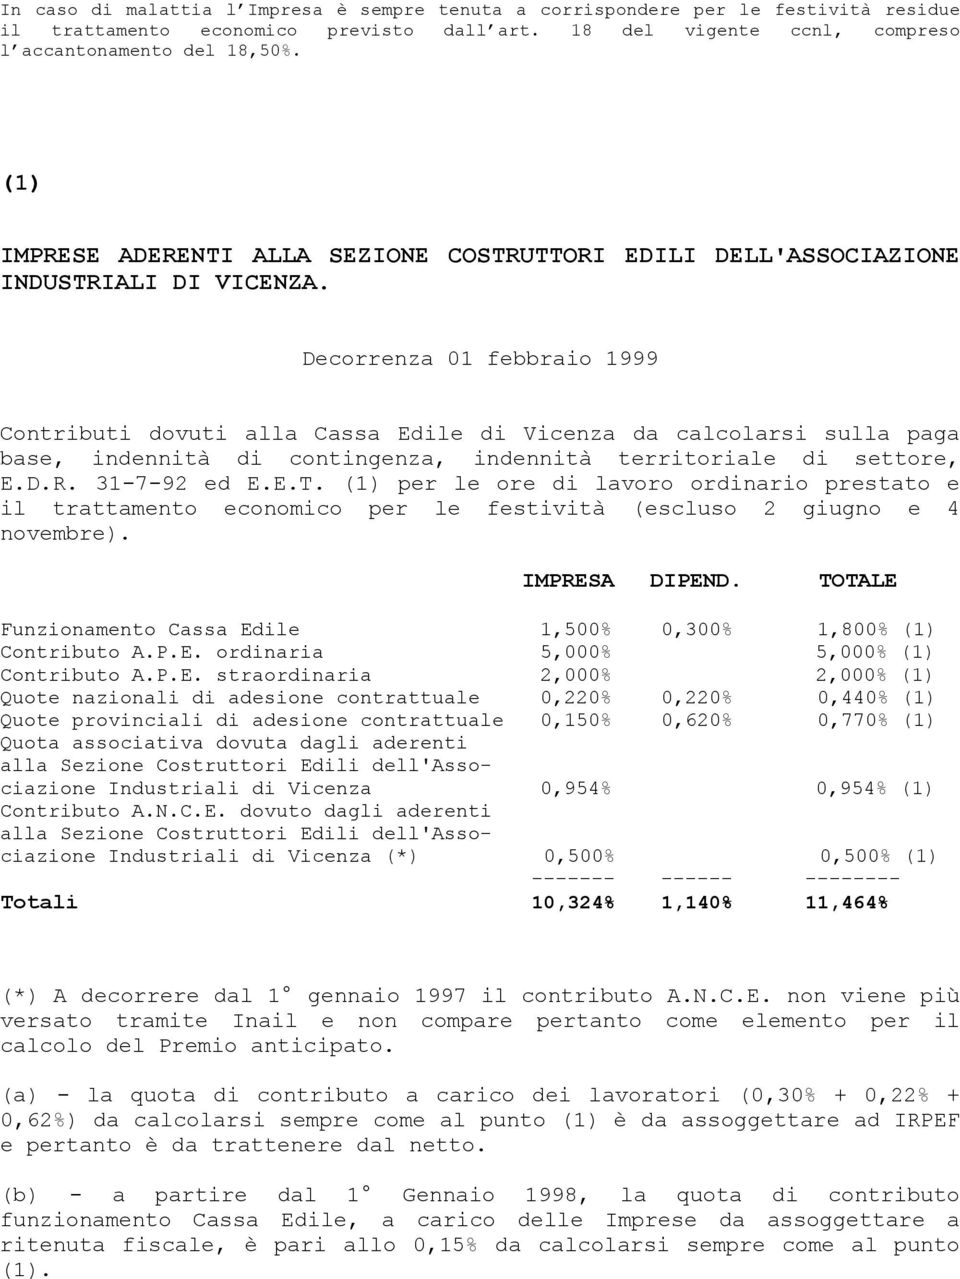 Decorrenza 01 febbraio 1999 Contributi dovuti alla Cassa Edile di Vicenza da calcolarsi sulla paga base, indennità di contingenza, indennità territoriale di settore, E.D.R. 31-7-92 ed E.E.T.